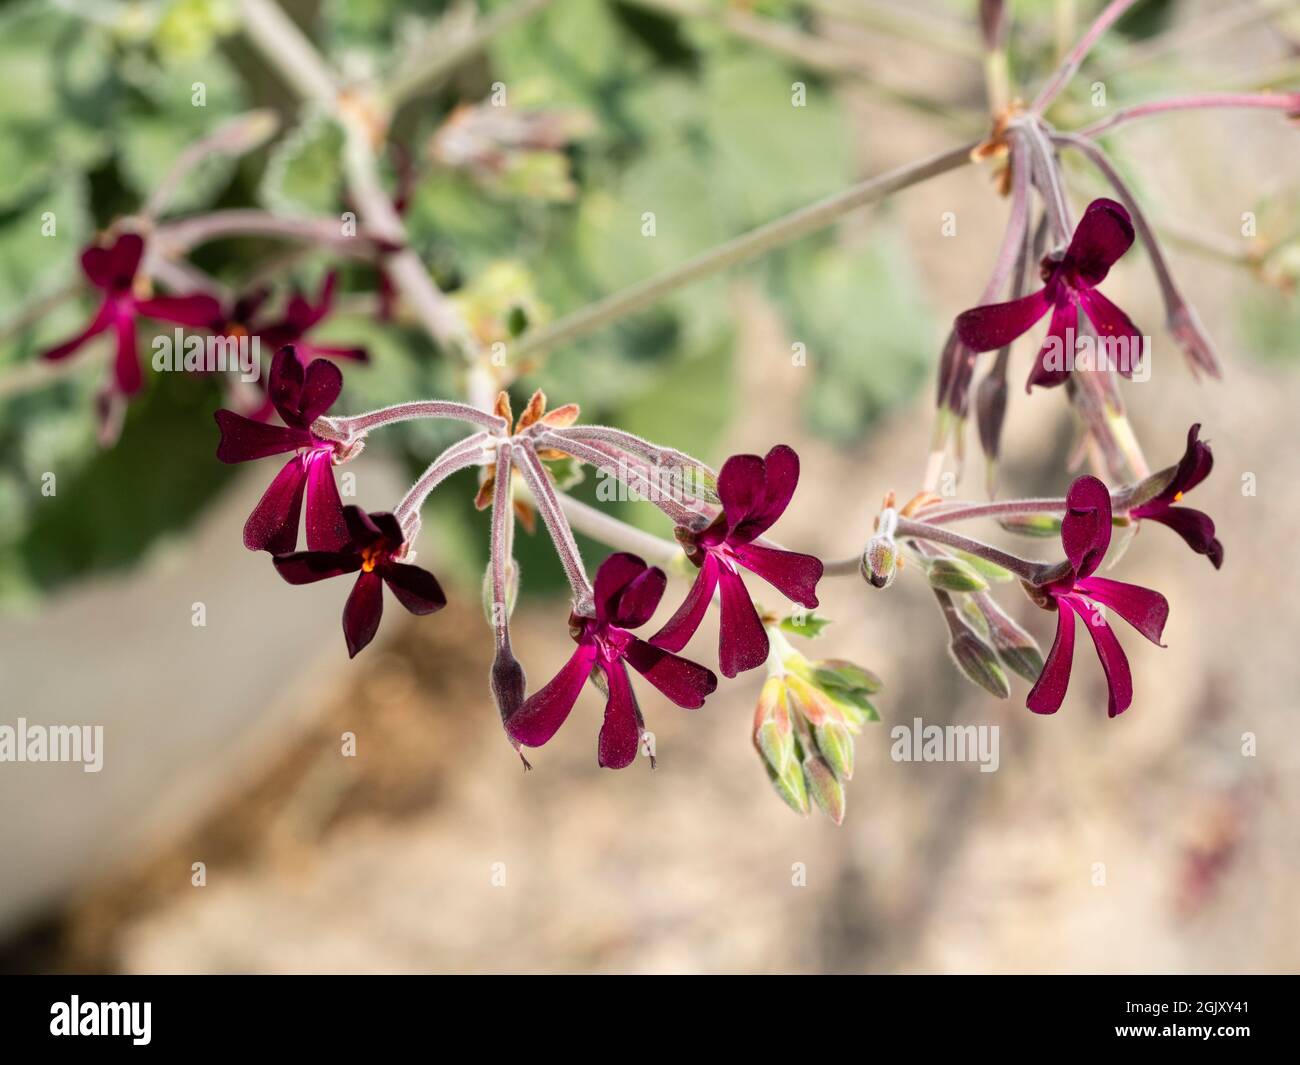 Pequeñas flores de color negro carmesí de la tierna especie sudafricana Pelargonium sidoides Foto de stock